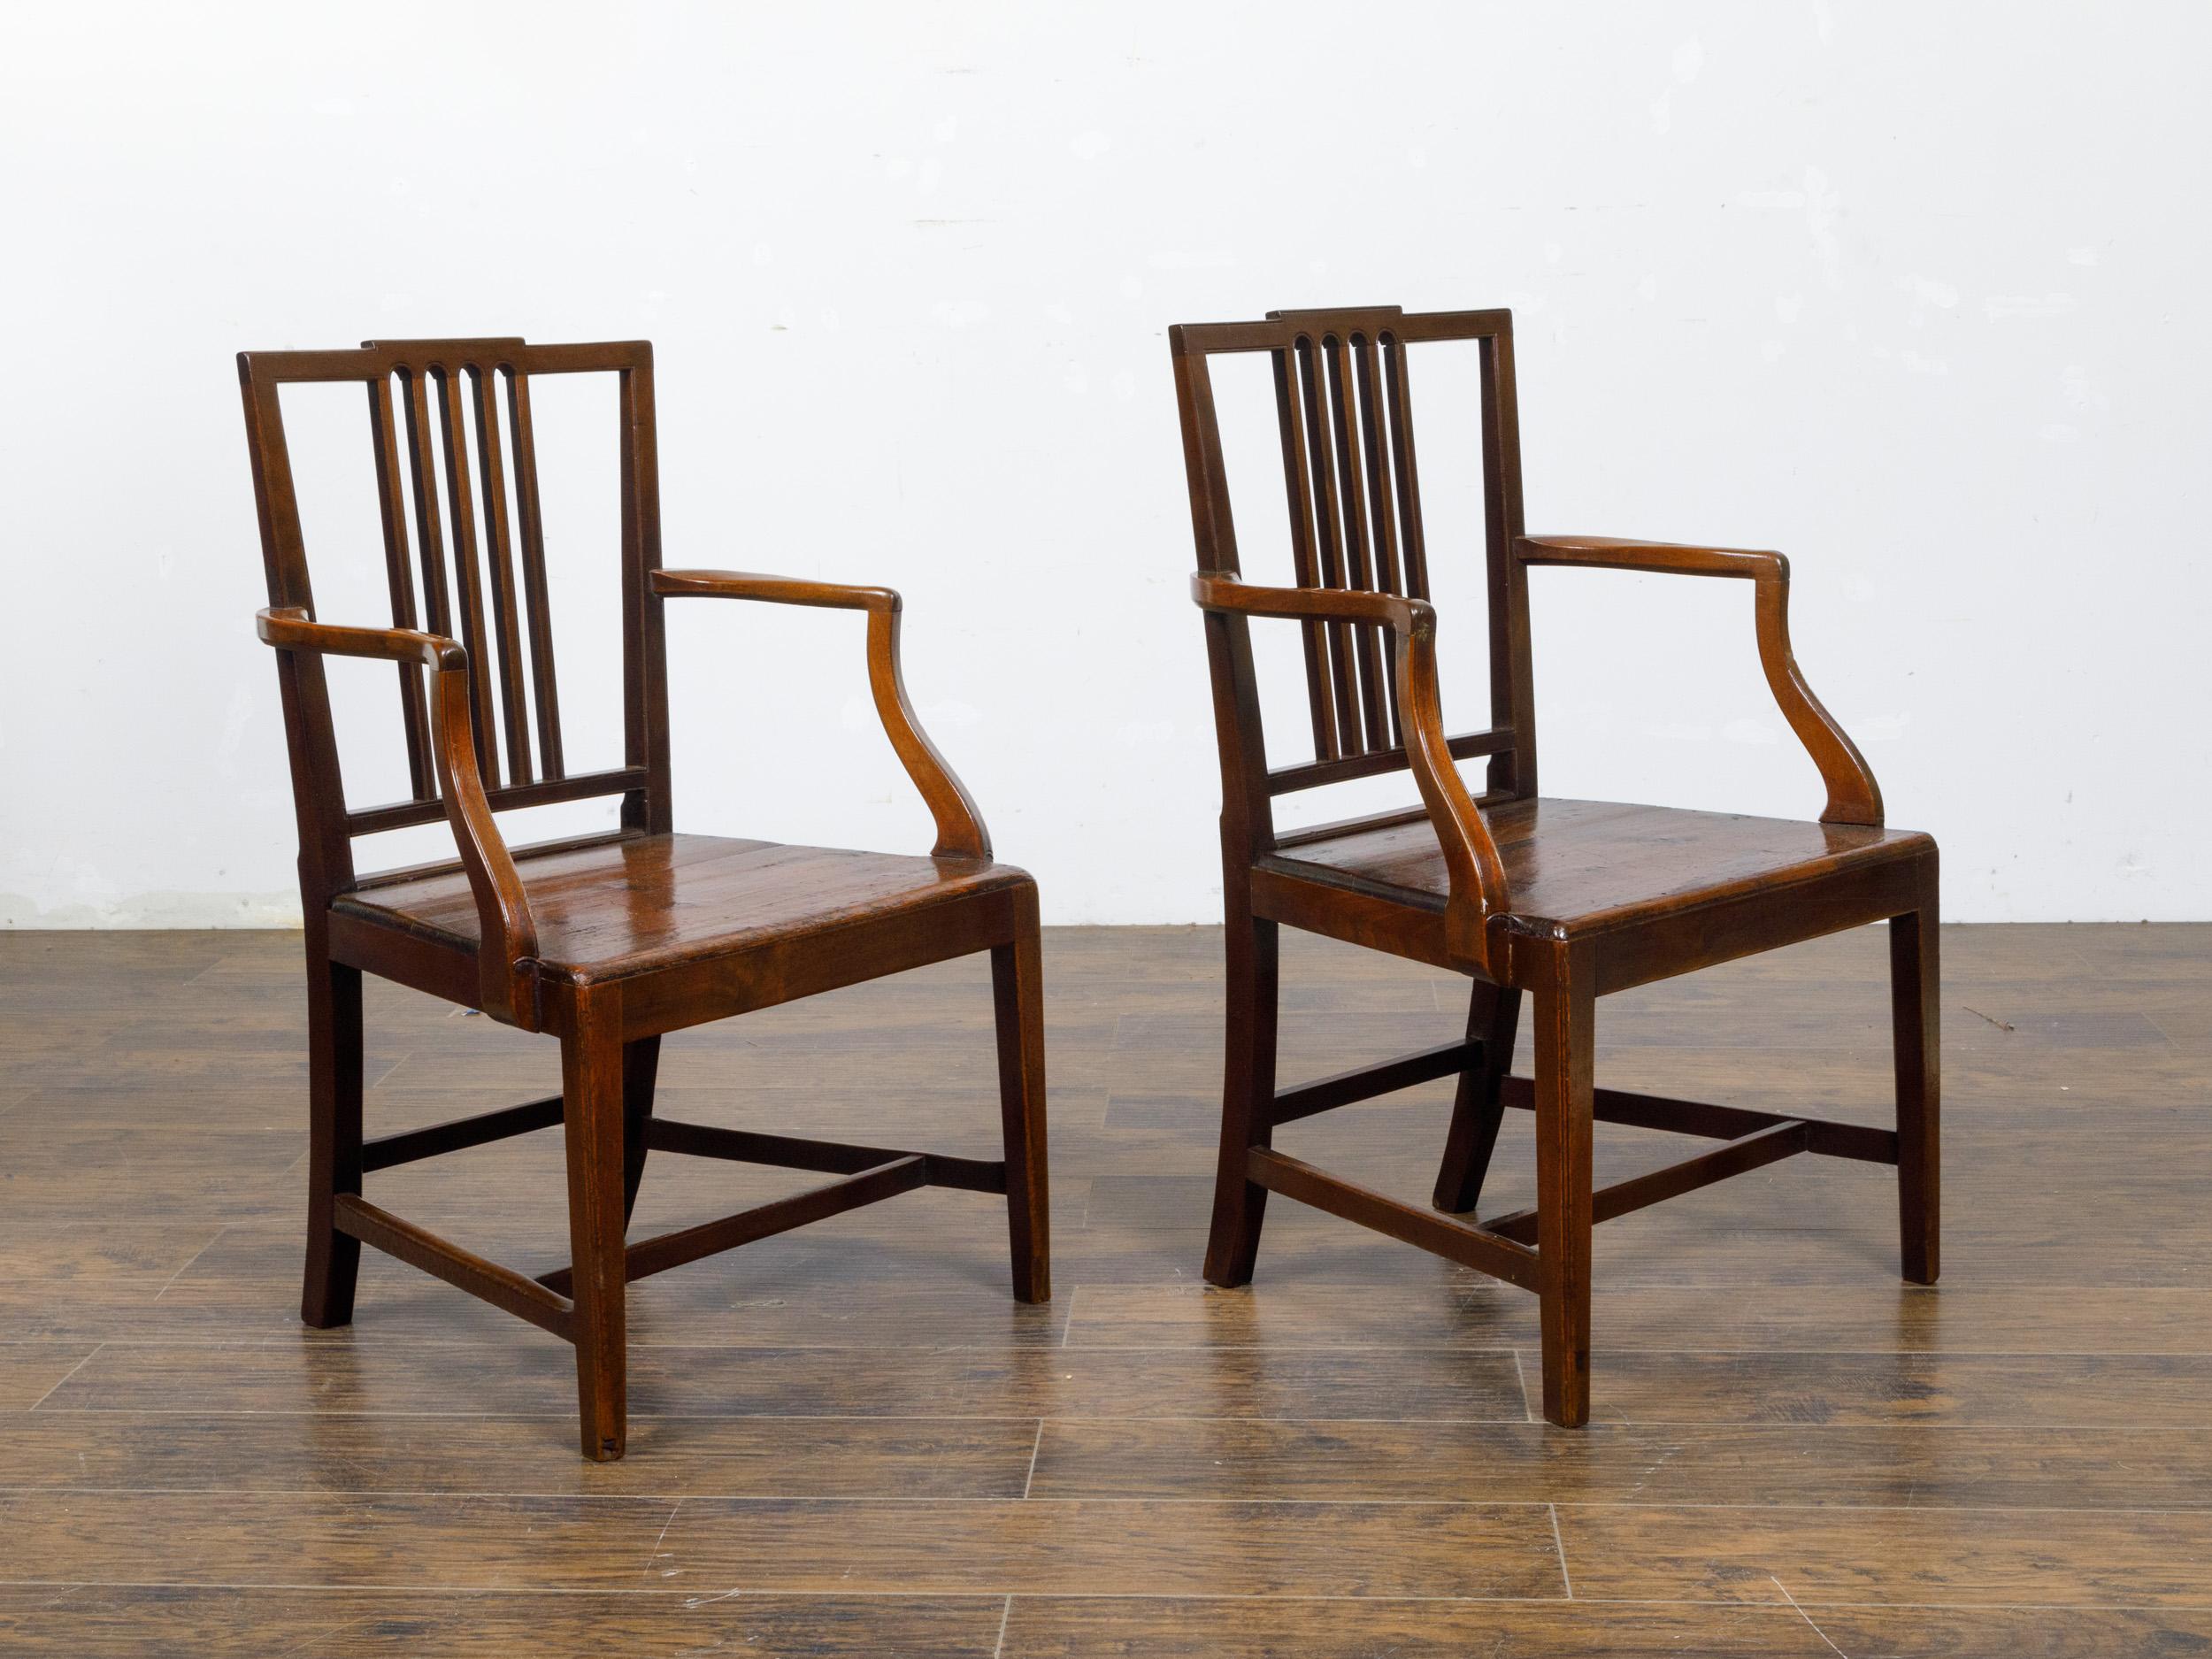 Paire de chaises anglaises d'époque George III, vers 1800, avec dossier percé, accoudoirs légèrement enroulés, pieds droits et brancards croisés. Cette paire de chaises d'époque George III provient de l'Angleterre du début du XIXe siècle. Elle